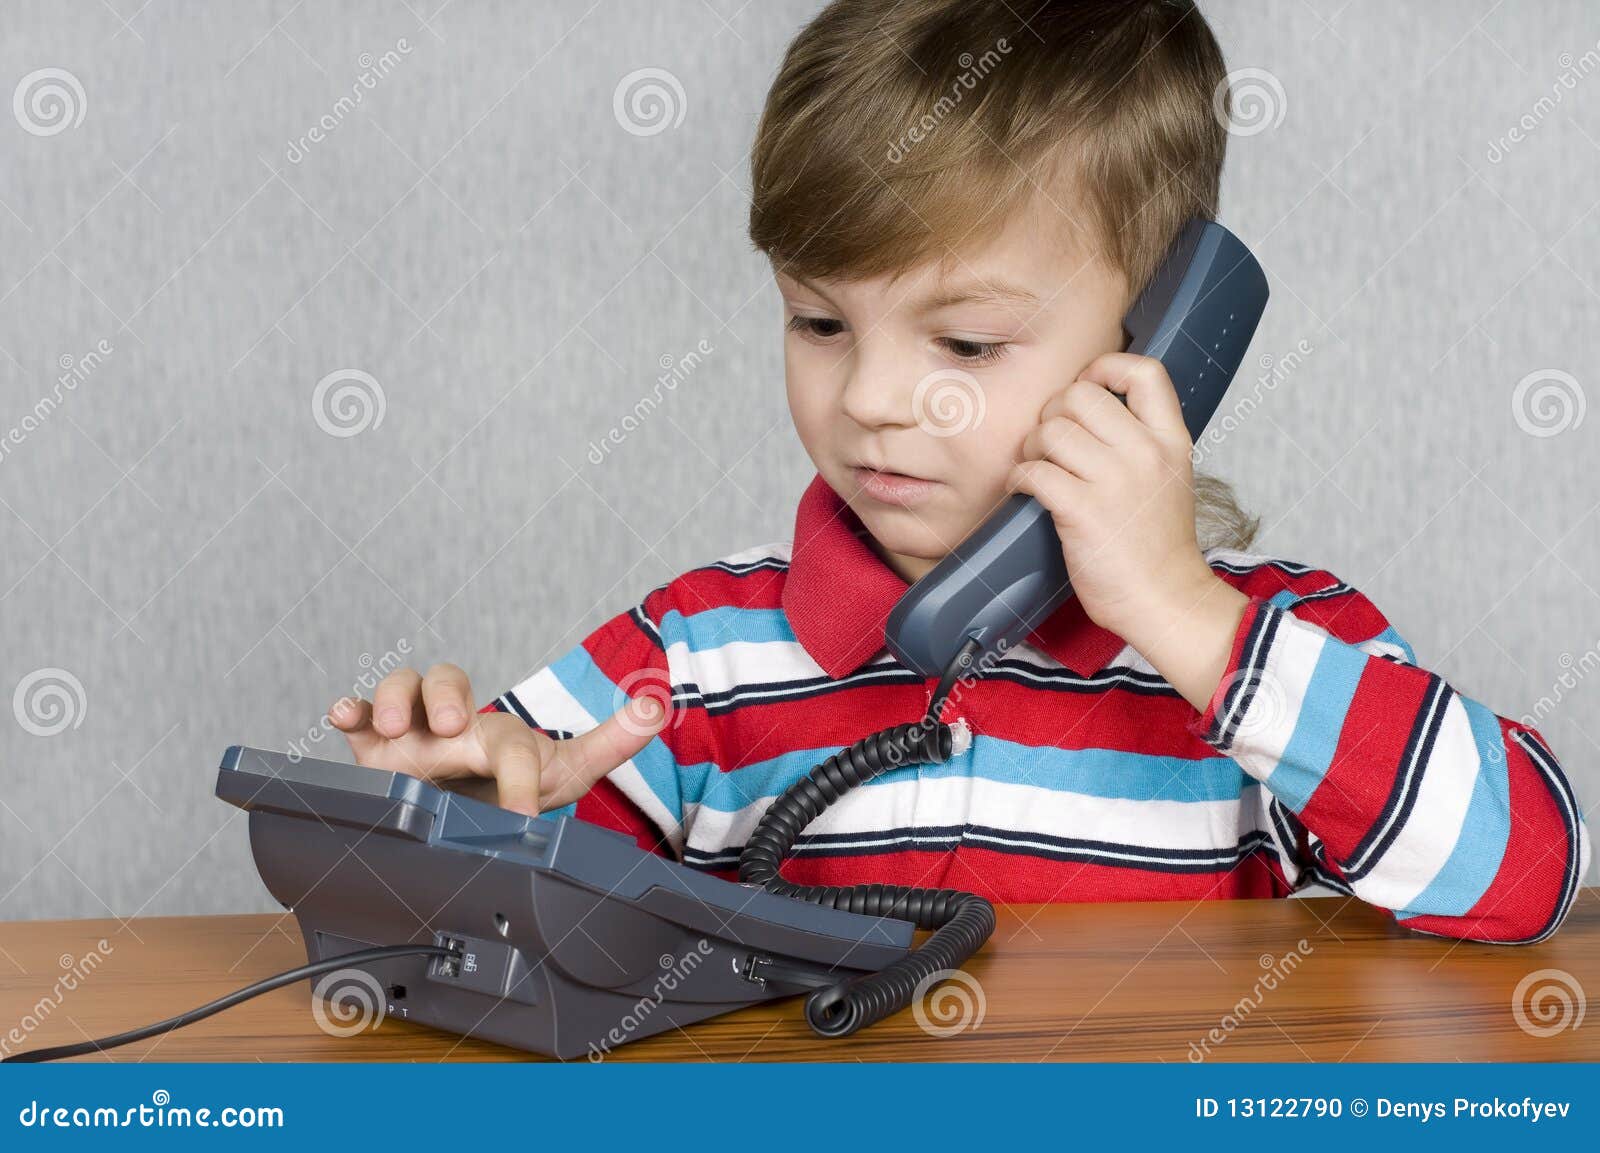 Включи телефон мальчик. Мальчик с телефоном. Испуганный ребенок с телефоном. Мальчик говорит по стационарному телефону. Ребенок с проводным телефоном.